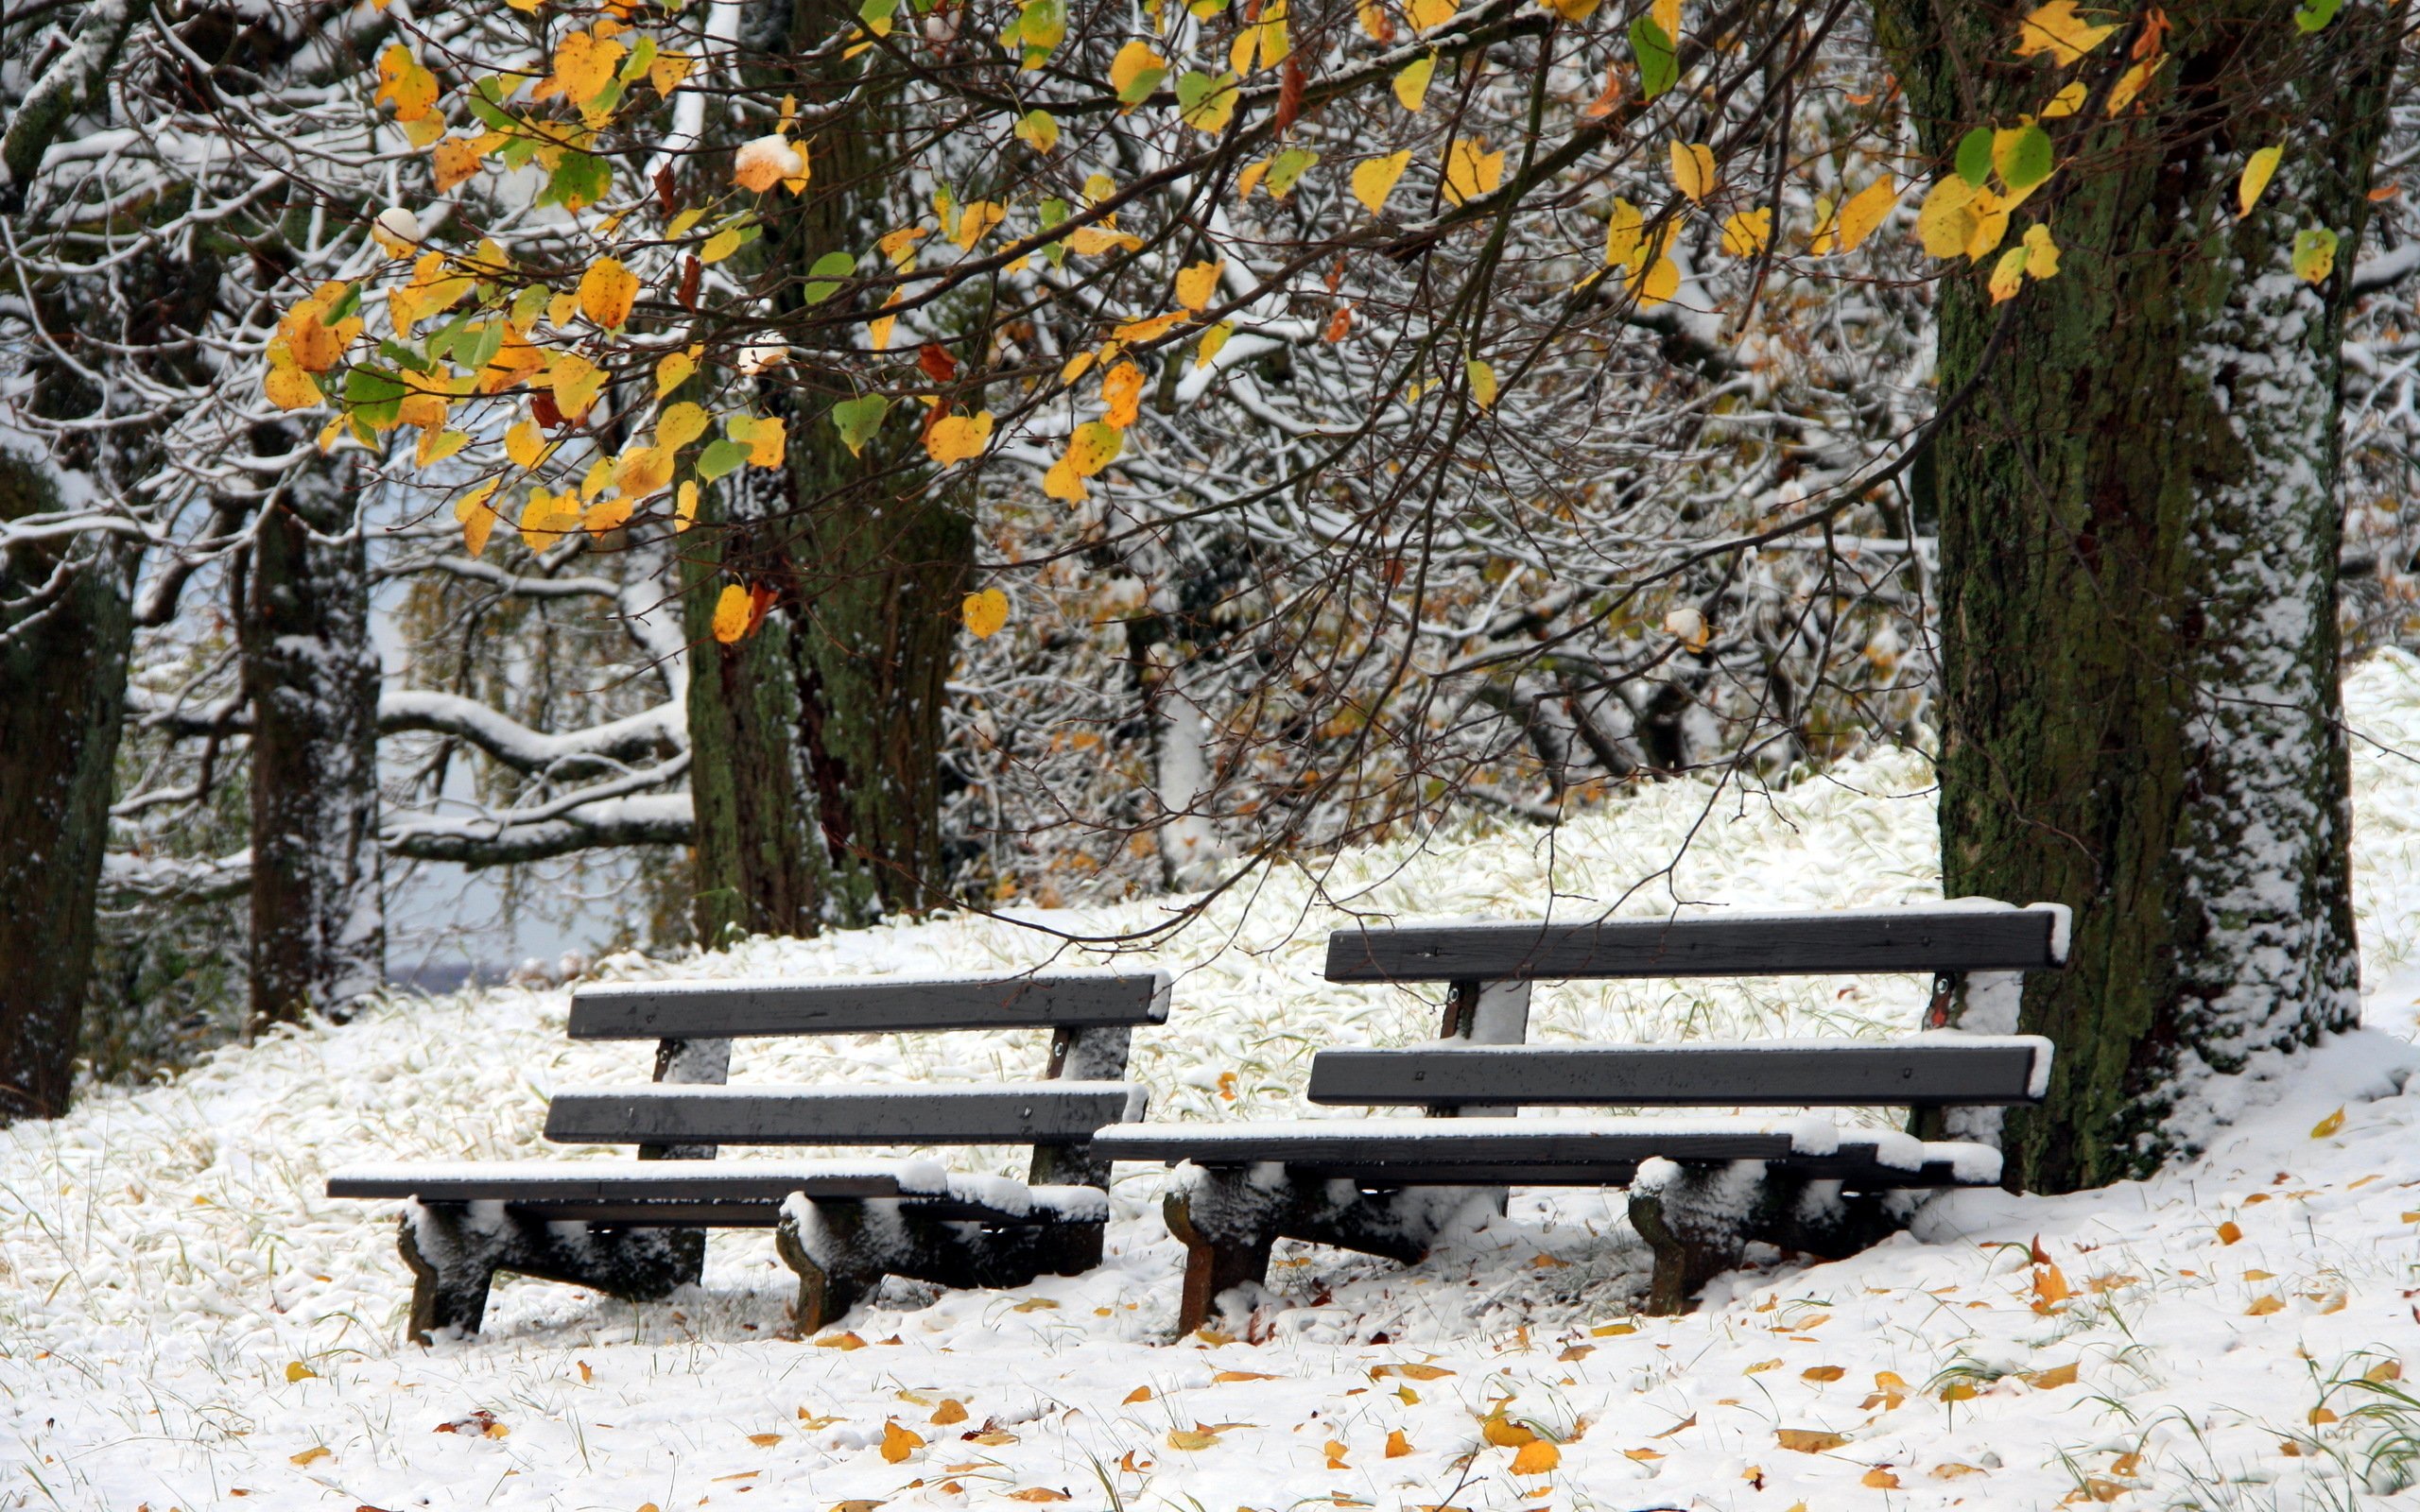 снег лежал на скамейках сквера накрывал